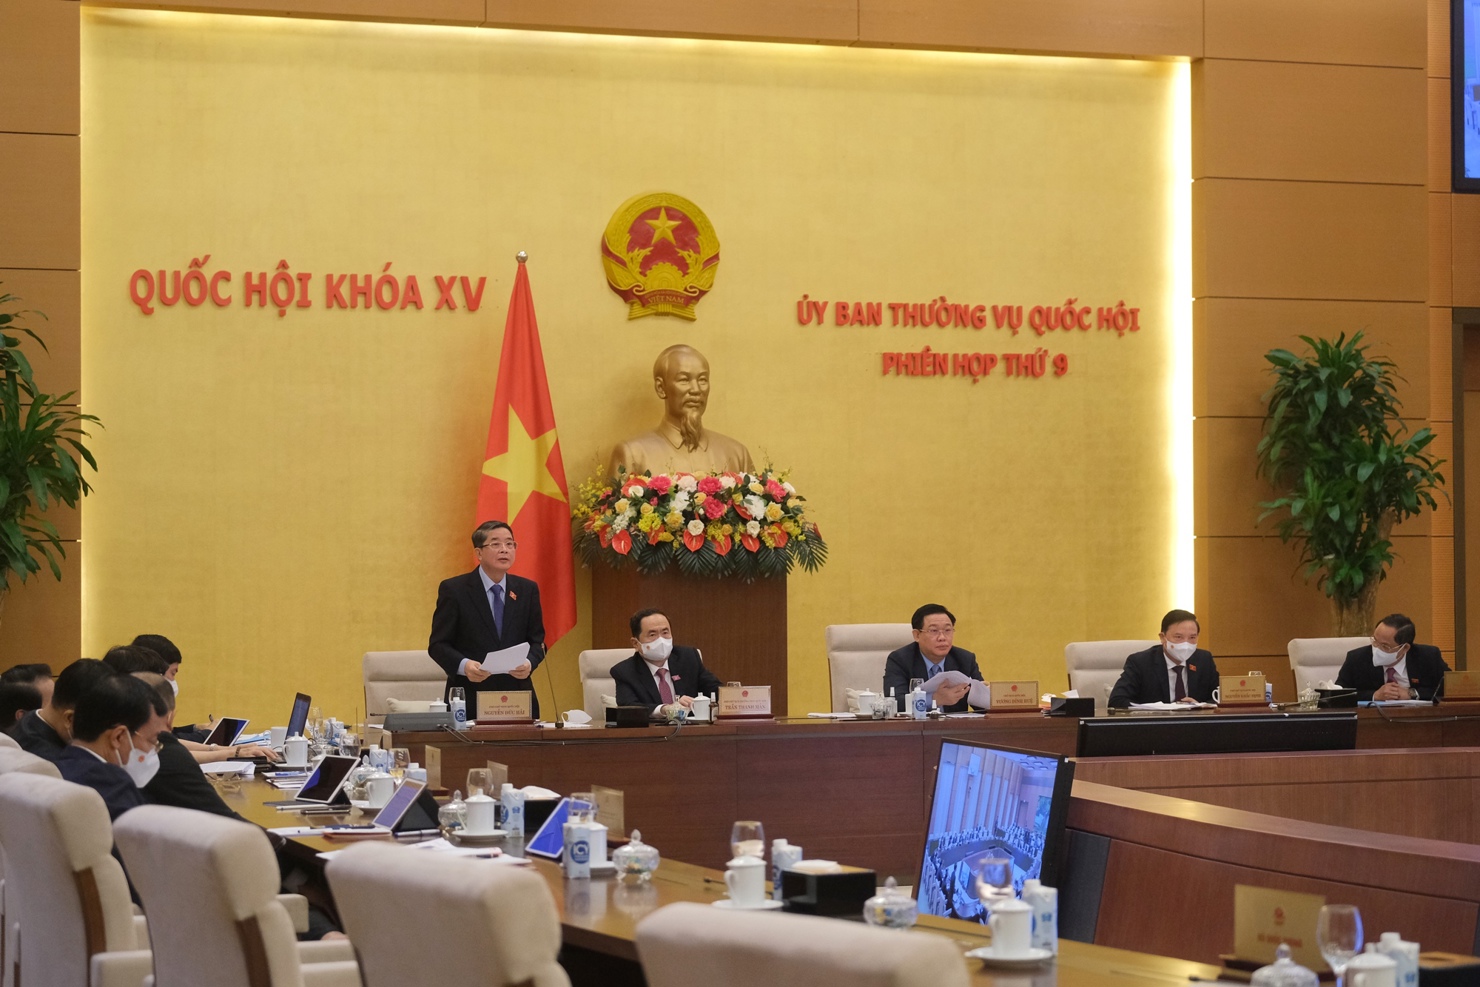 Phó Chủ tịch Quốc hội Nguyễn Đức Hải điều hành phiên làm việc.